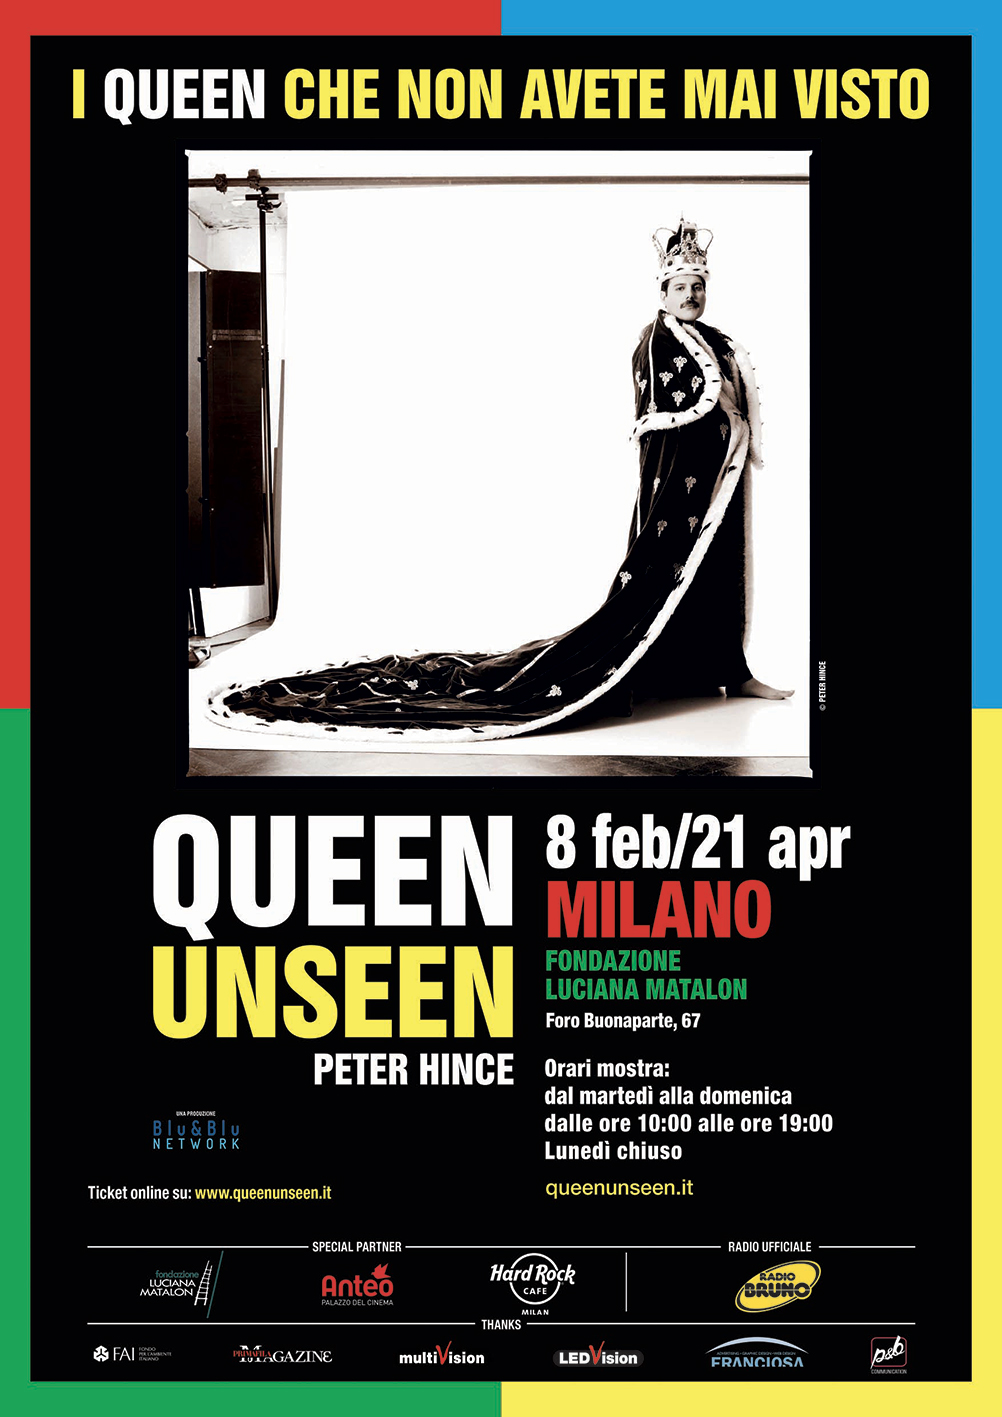 Queen Unseen - Peter Hince's exhibition in Milan